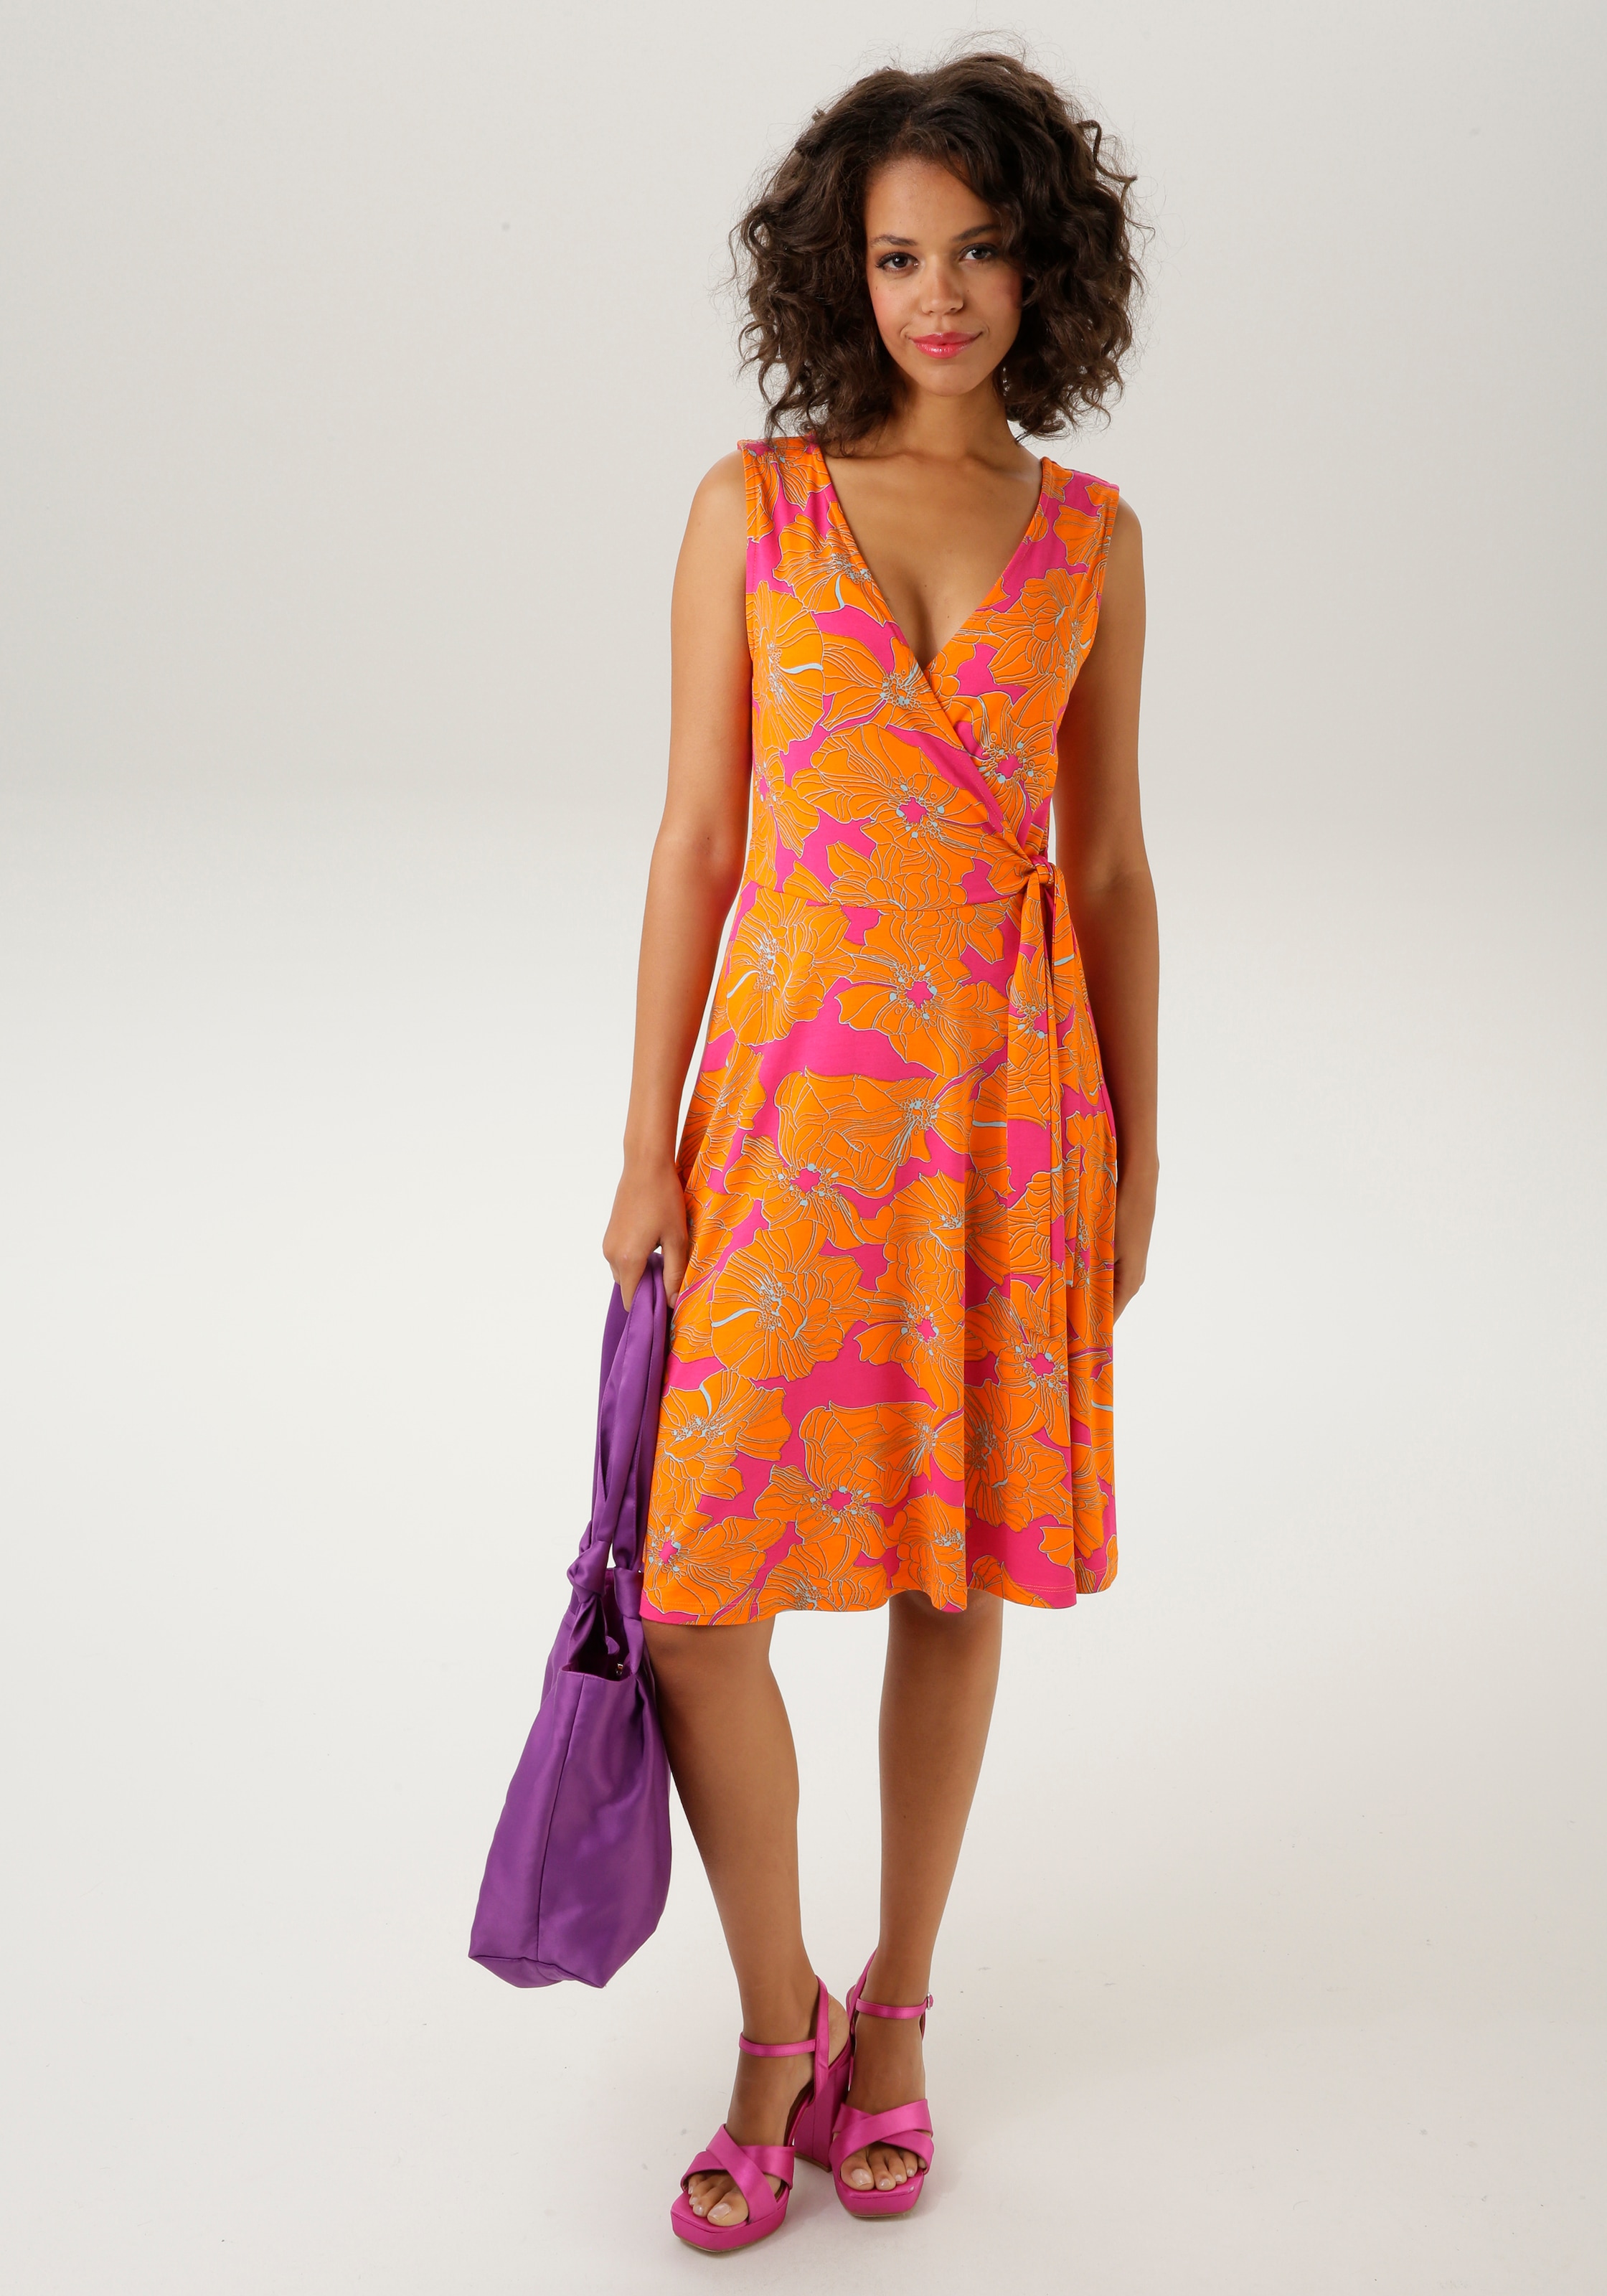 KOLLEKTION mit - NEUE kaufen farbintensivem, großflächigem Blumendruck Sommerkleid, CASUAL Aniston